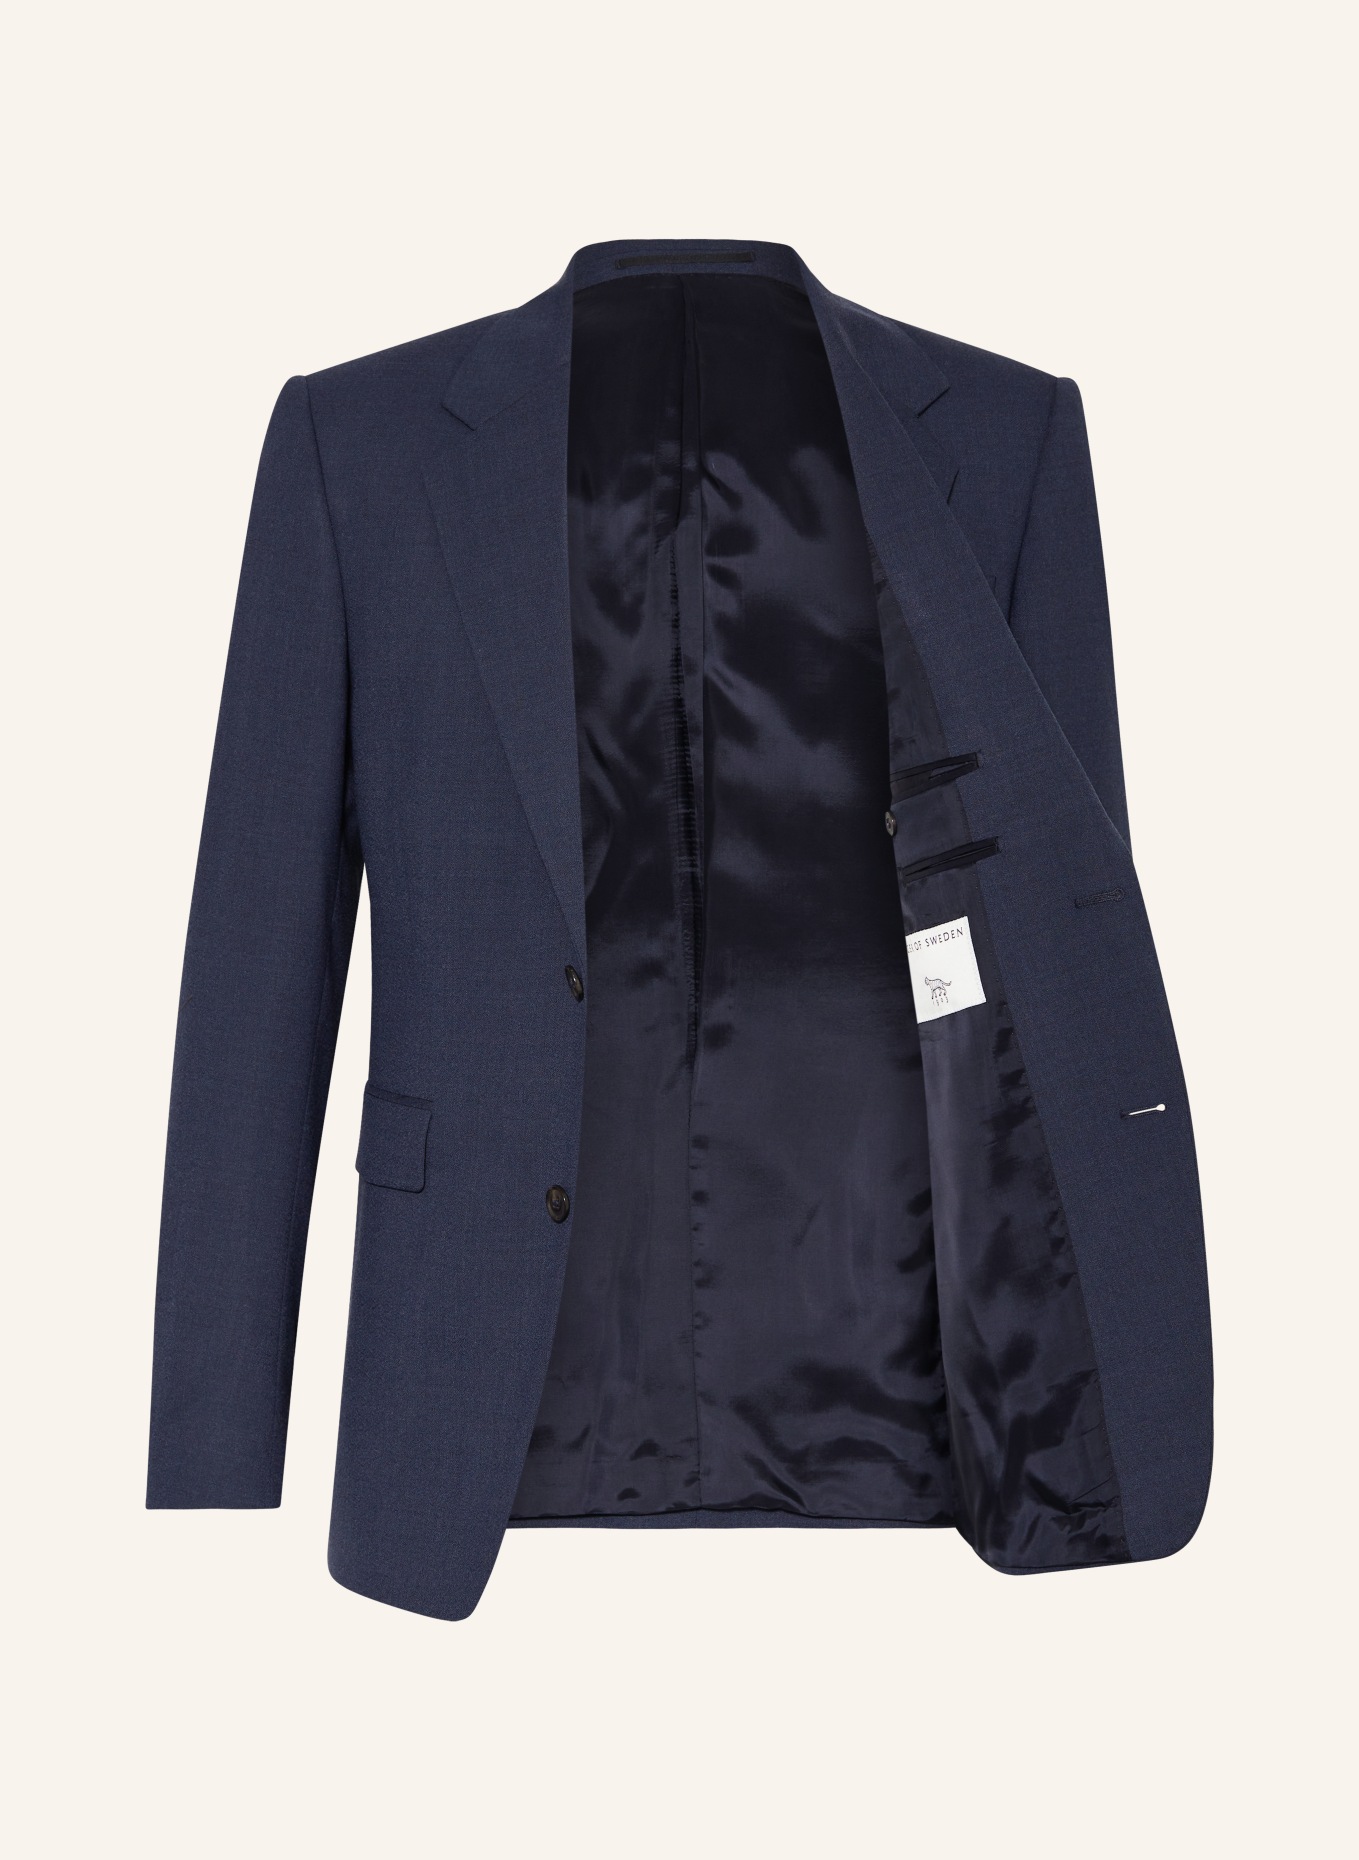 TIGER OF SWEDEN Suit jacket JULIEN regular fit, Color: 231 Dusty blue (Image 4)